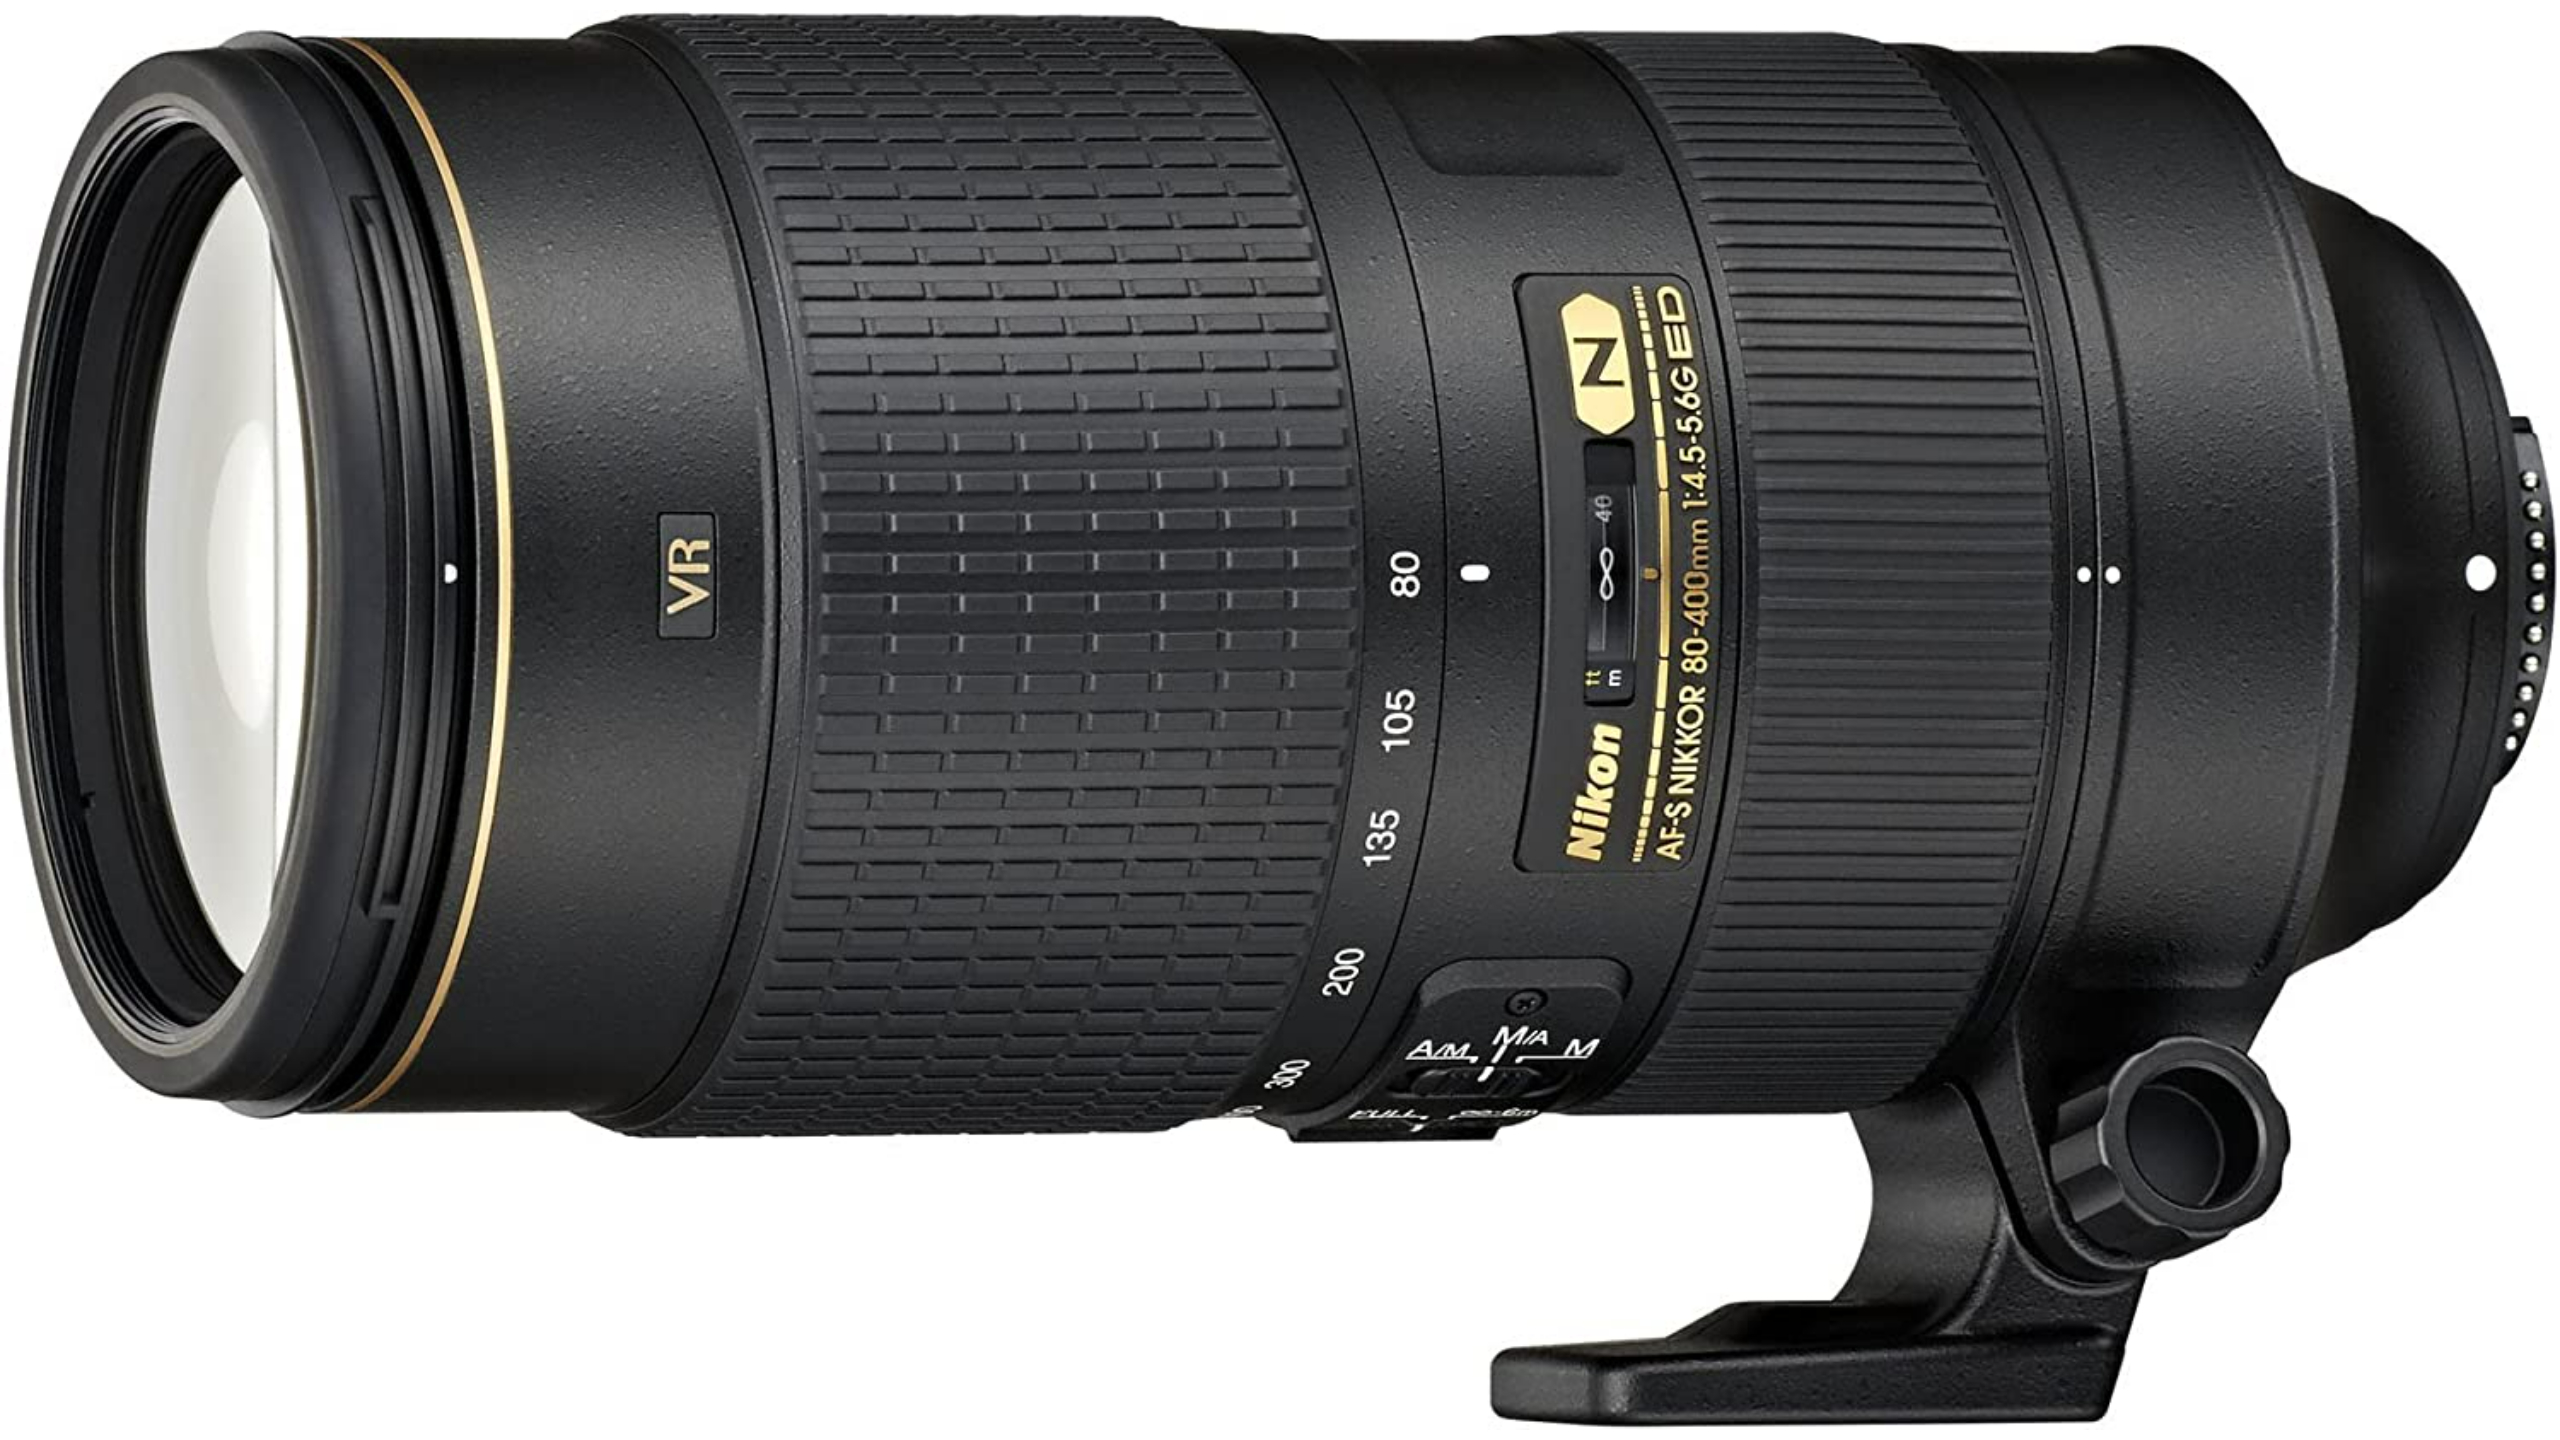 Product photo of the Nikon 80-400mm AF-S Nikkor f4.5-5.6G ED VR lens